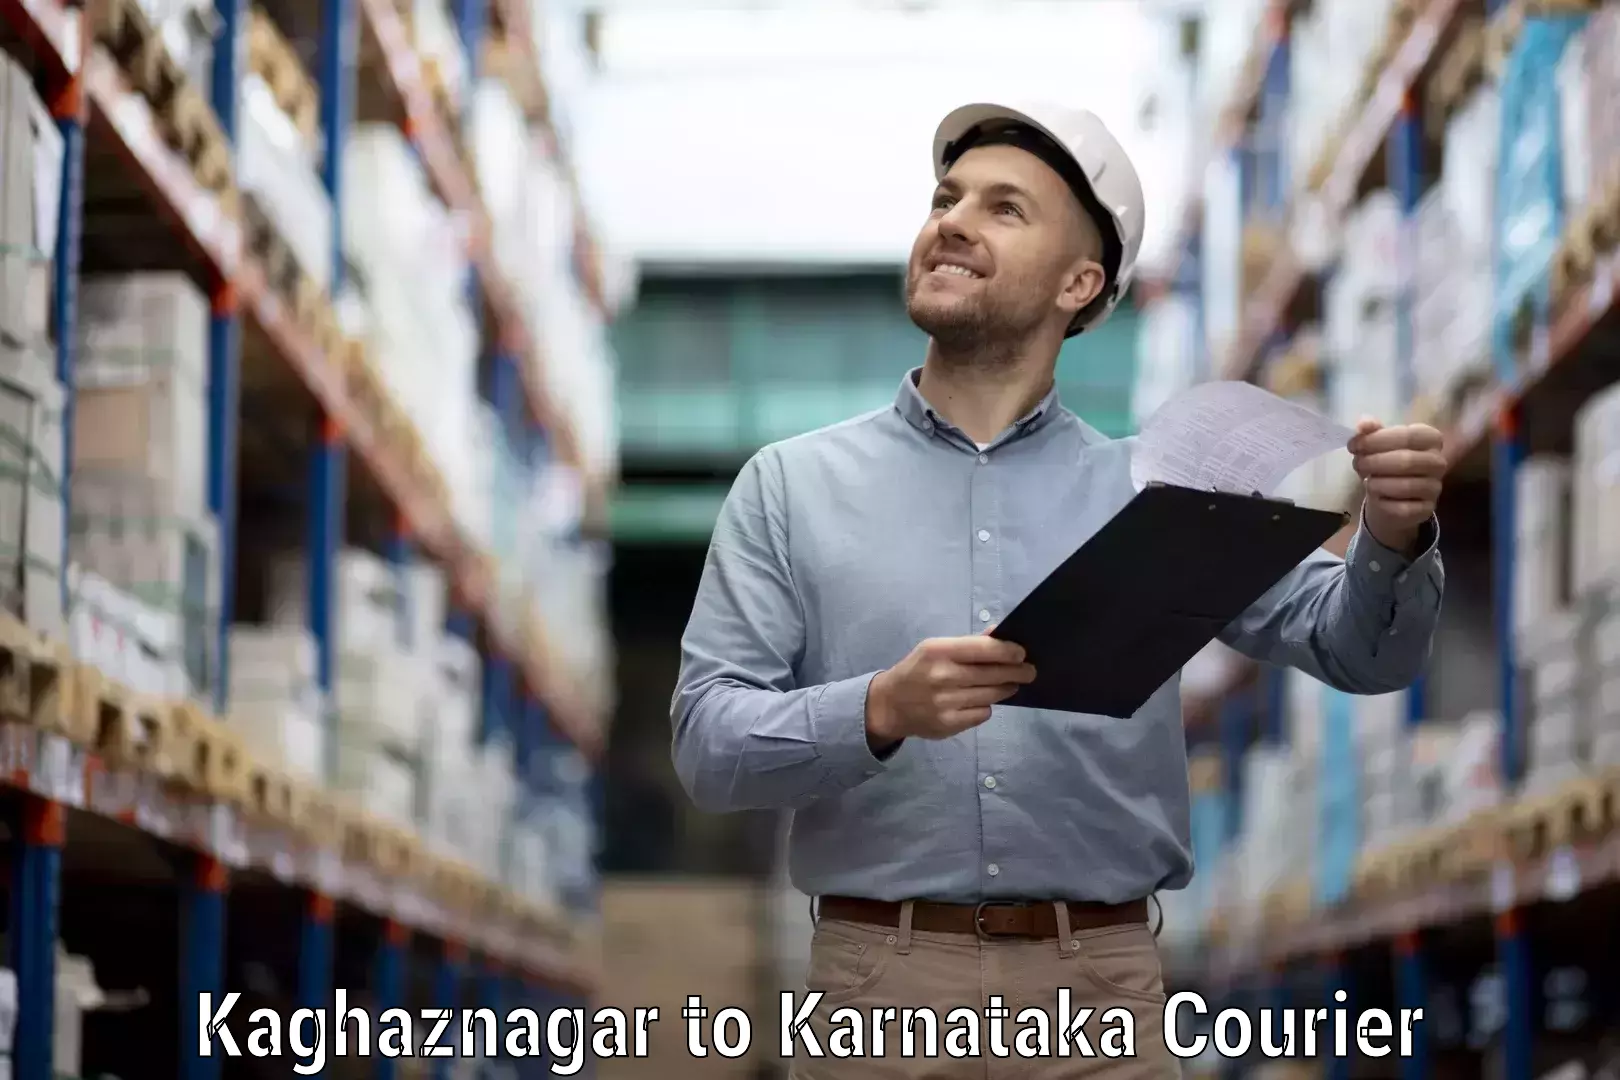 Nationwide shipping capabilities Kaghaznagar to Mahalingpur